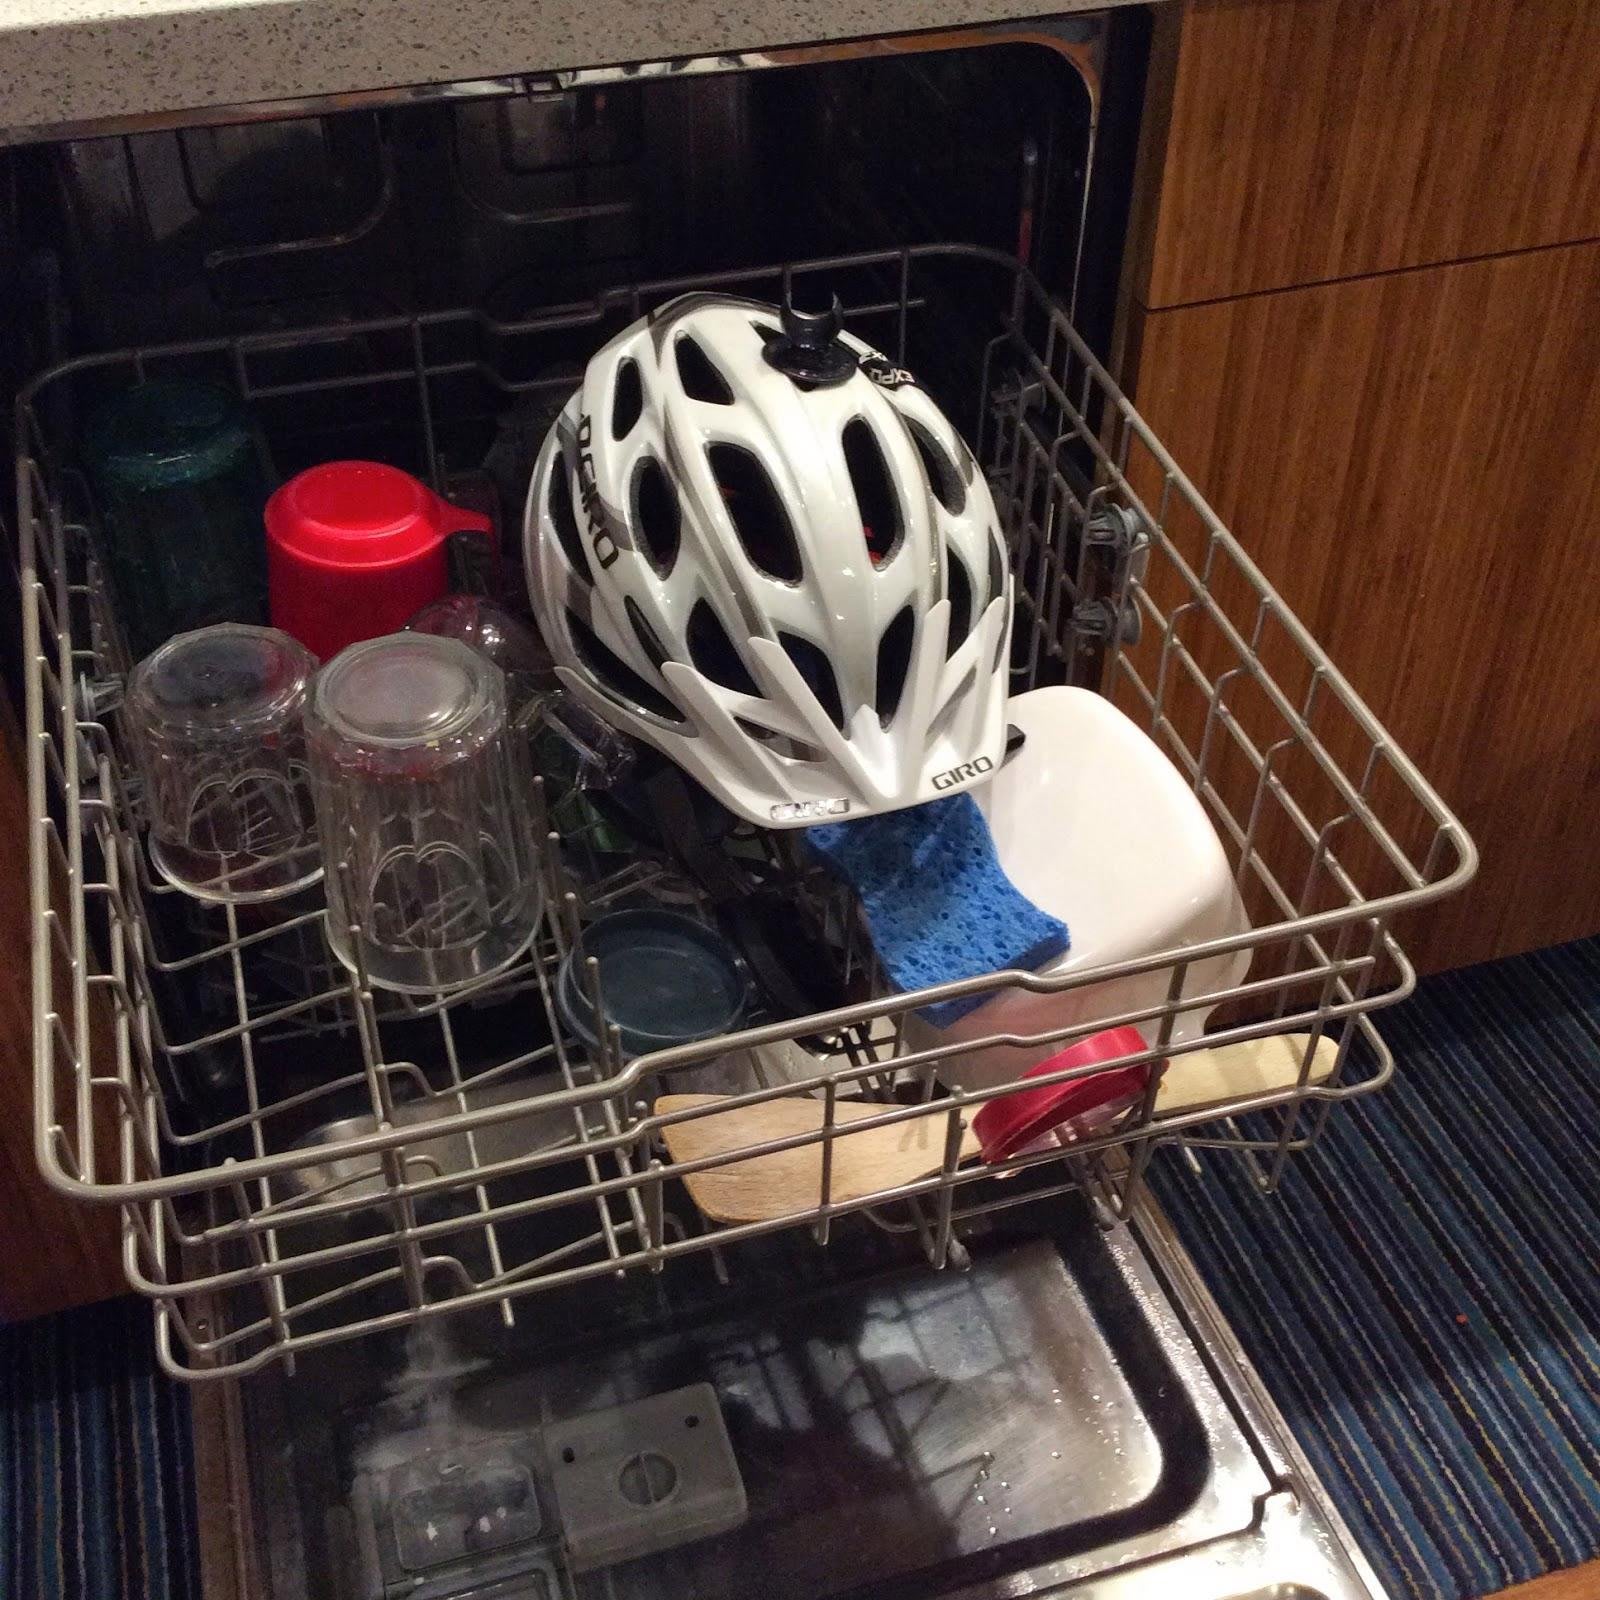 Кастрюля можно мыть в посудомоечной машине. Посуда в посудомойке. Приспособления для посудомоечной машины. Пластиковая посуда в посудомоечной машине. Пластиковый контейнер в посудомоечной машине.